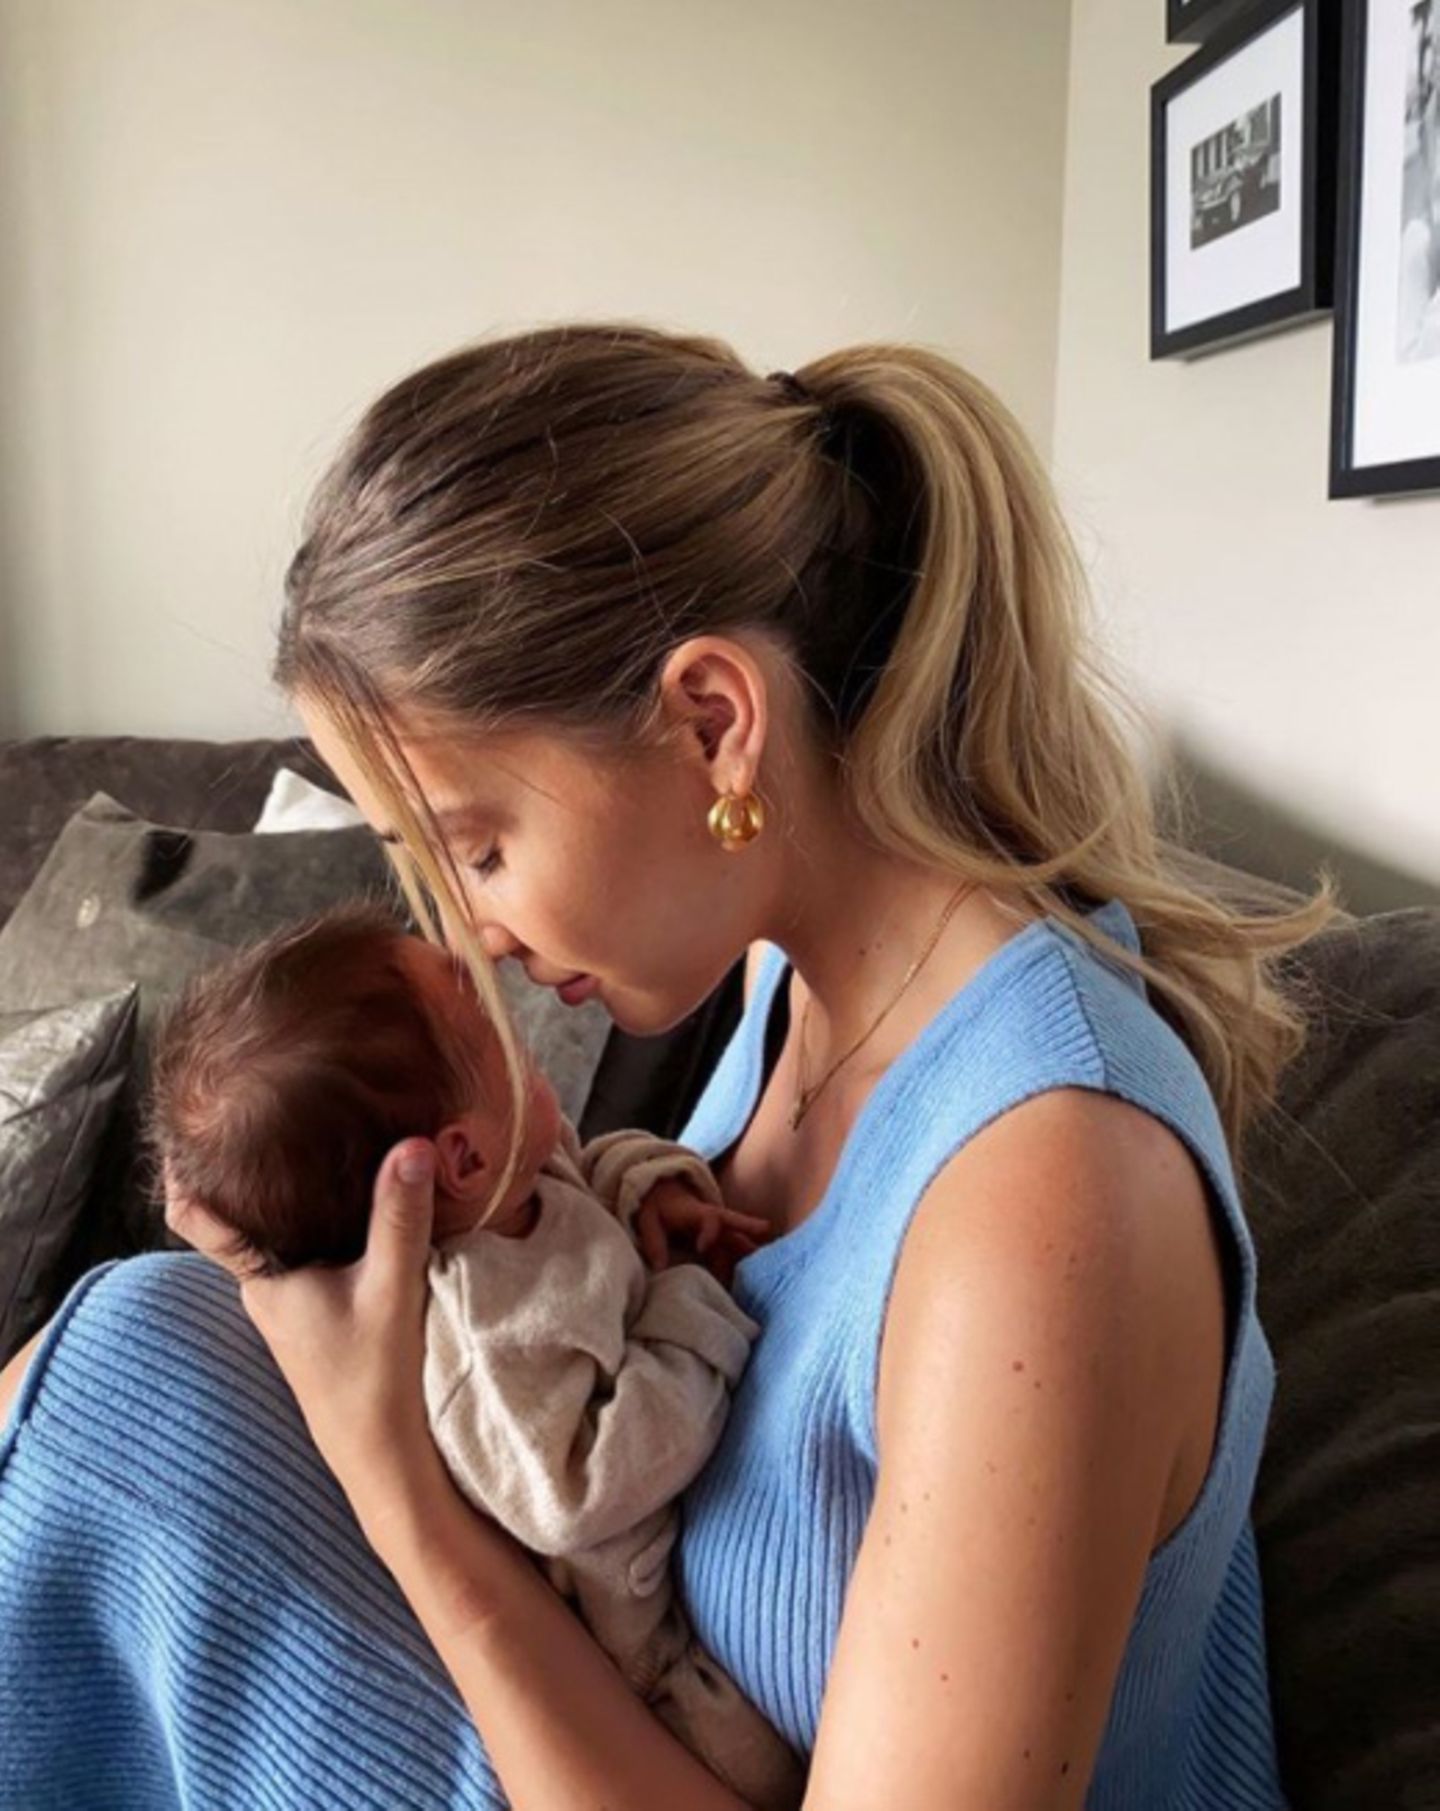 28. Juni 2020  Familie Götze im Babyglück! Neu-Mama Ann-Kathrin Götze veröffentlicht einen ersten, zuckersüßen Schnappschuss mit Söhnchen Rome, den sie zärtlich in den Armen hält.